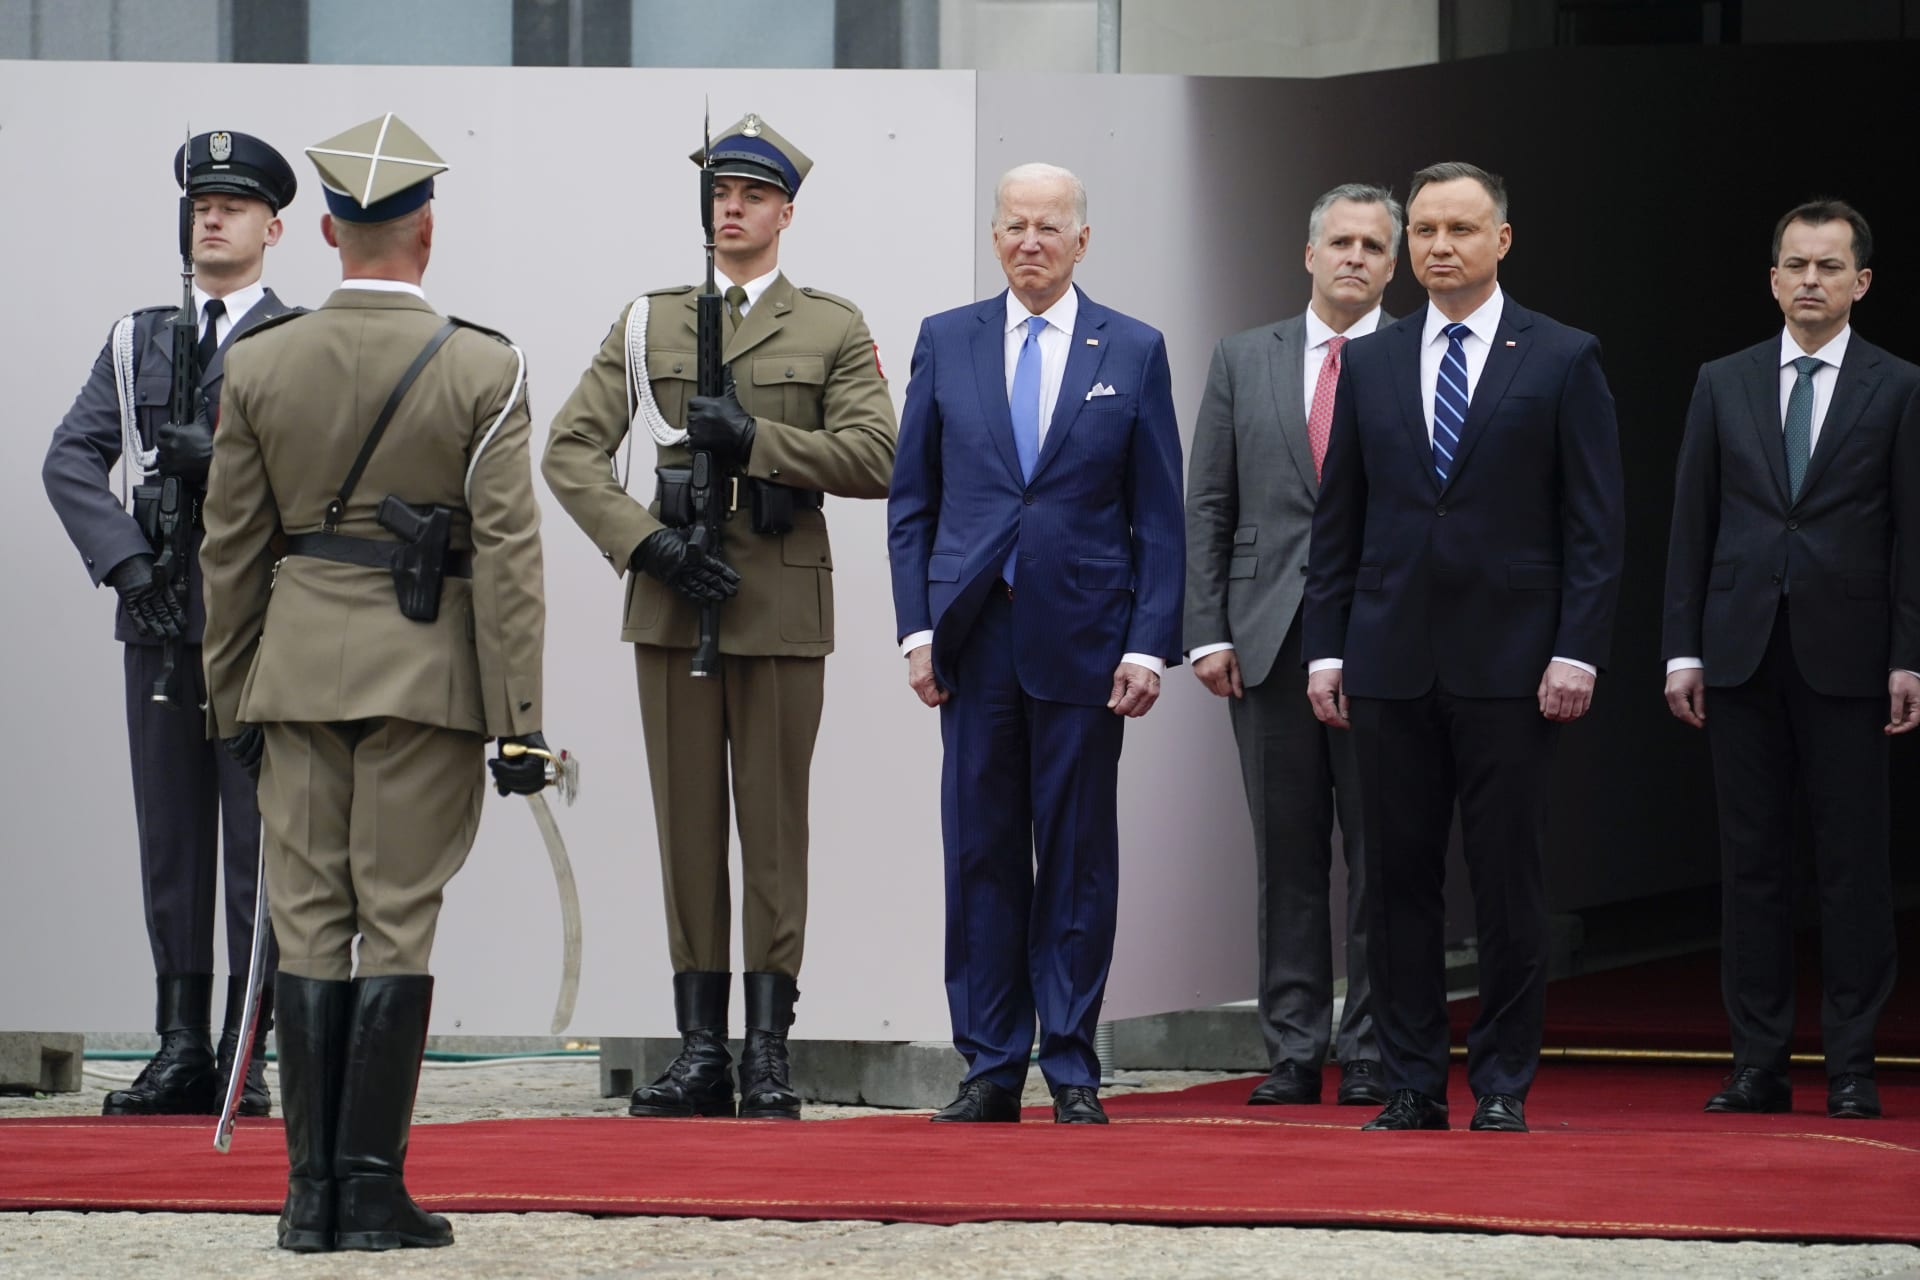 Prezident Joe Biden se účastnil slavnostního příjezdu s polským prezidentem Andrzejem Dudou do prezidentského paláce.